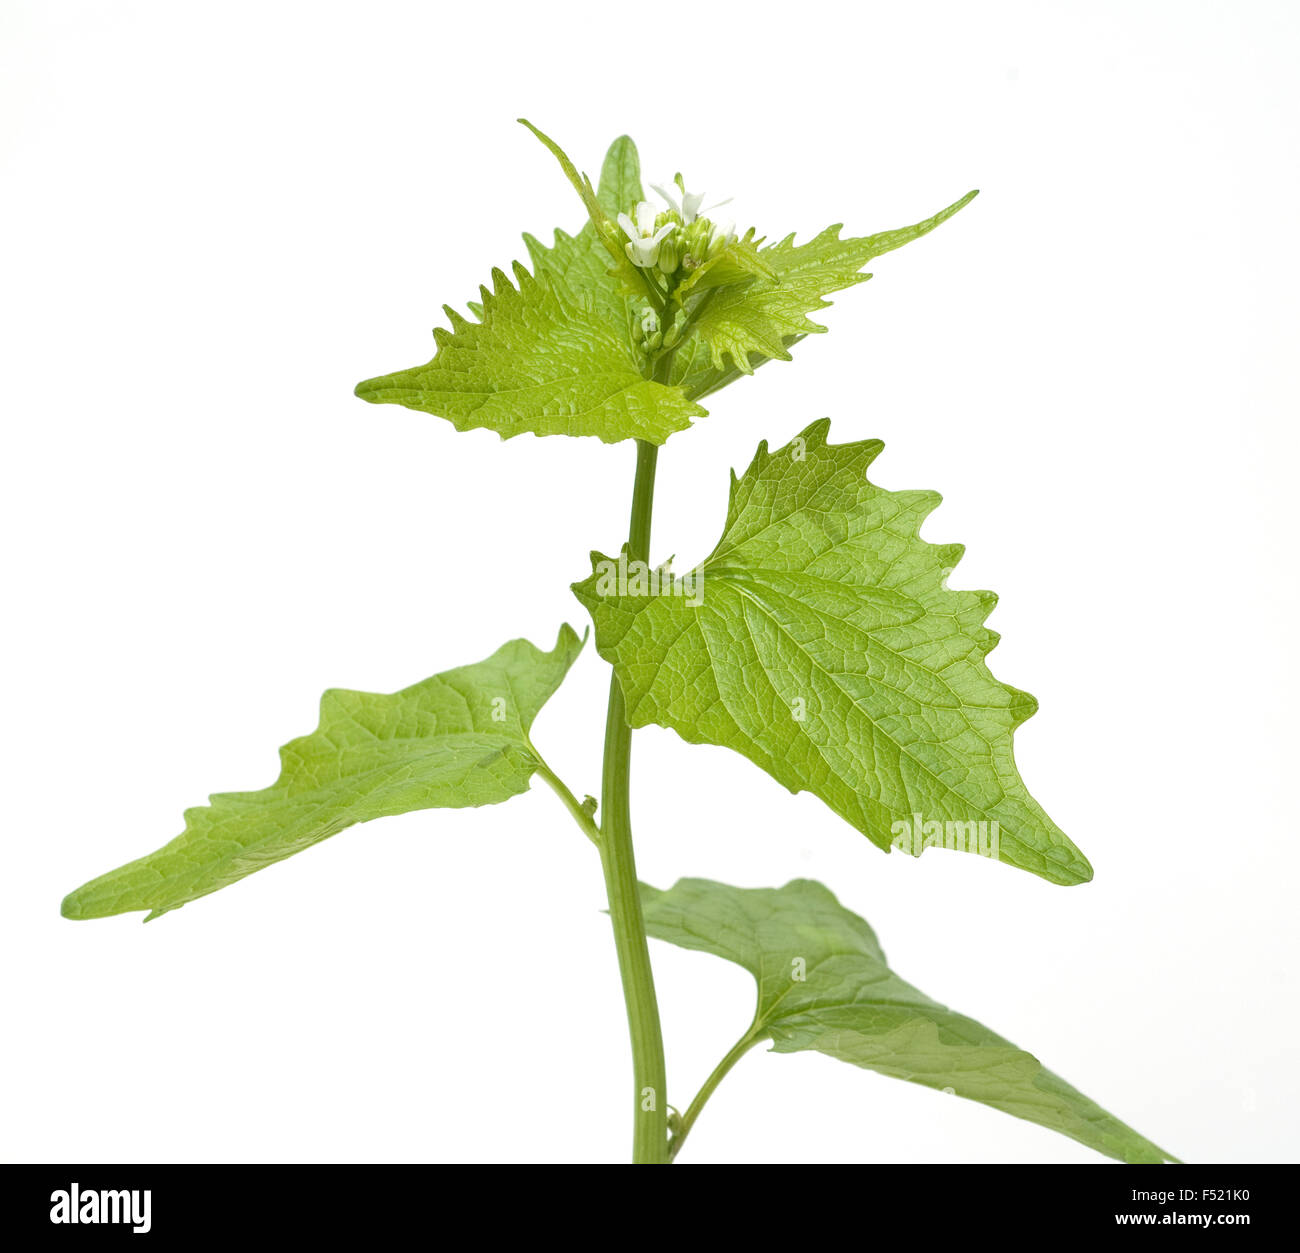 Knoblauchsrauke; Alliaria petiolata Stock Photo